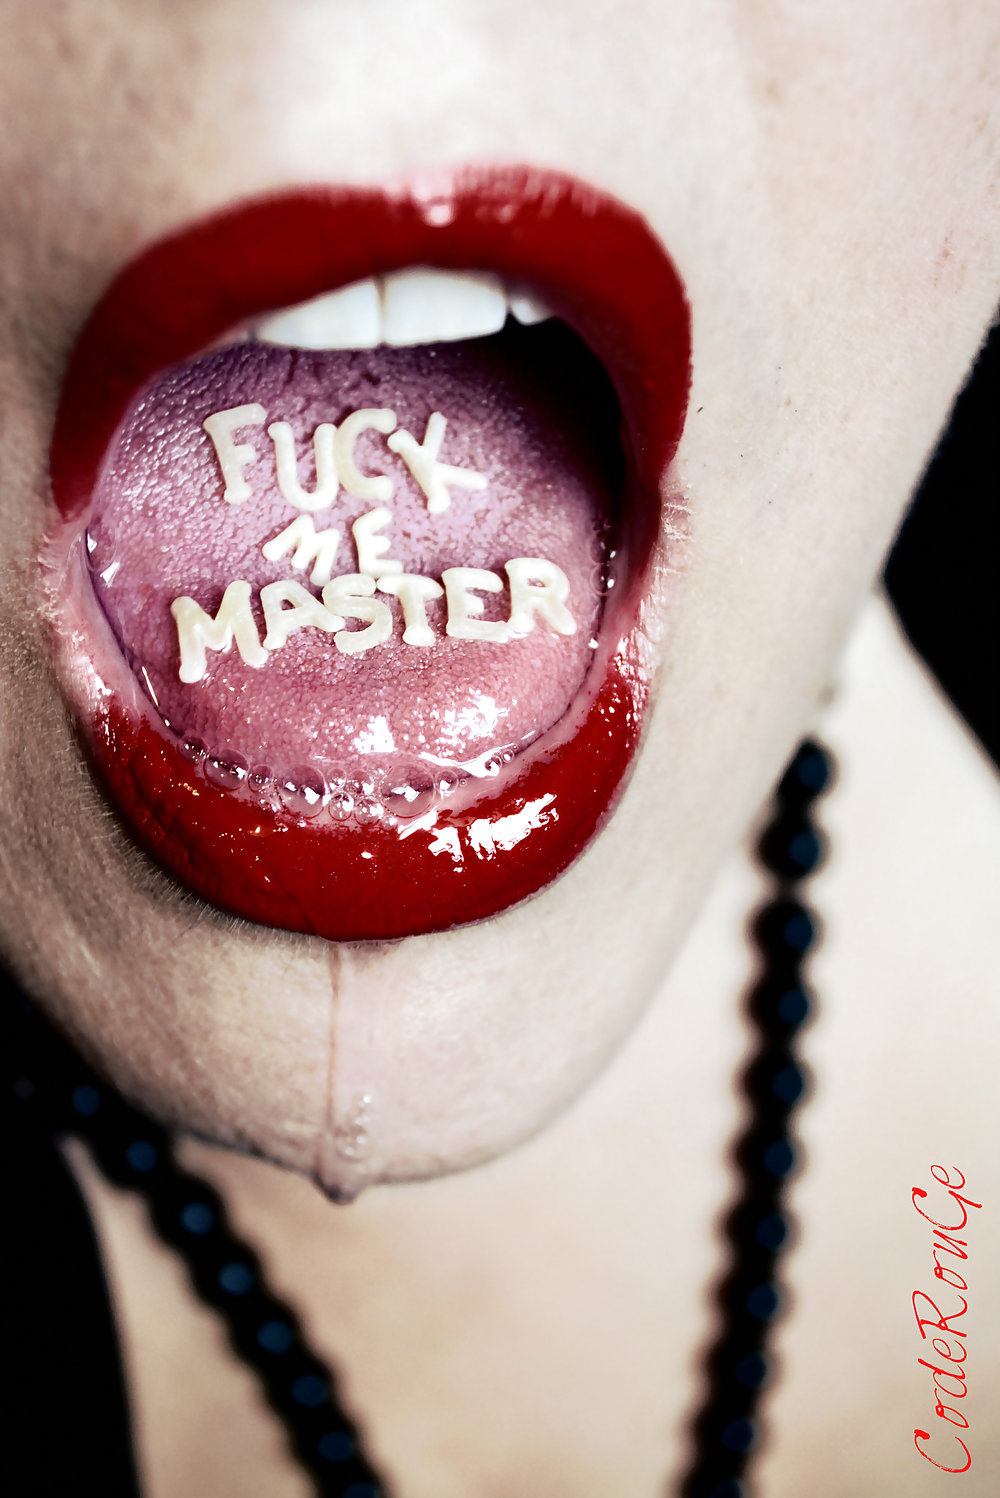 Fuck me master ii
 #24182889